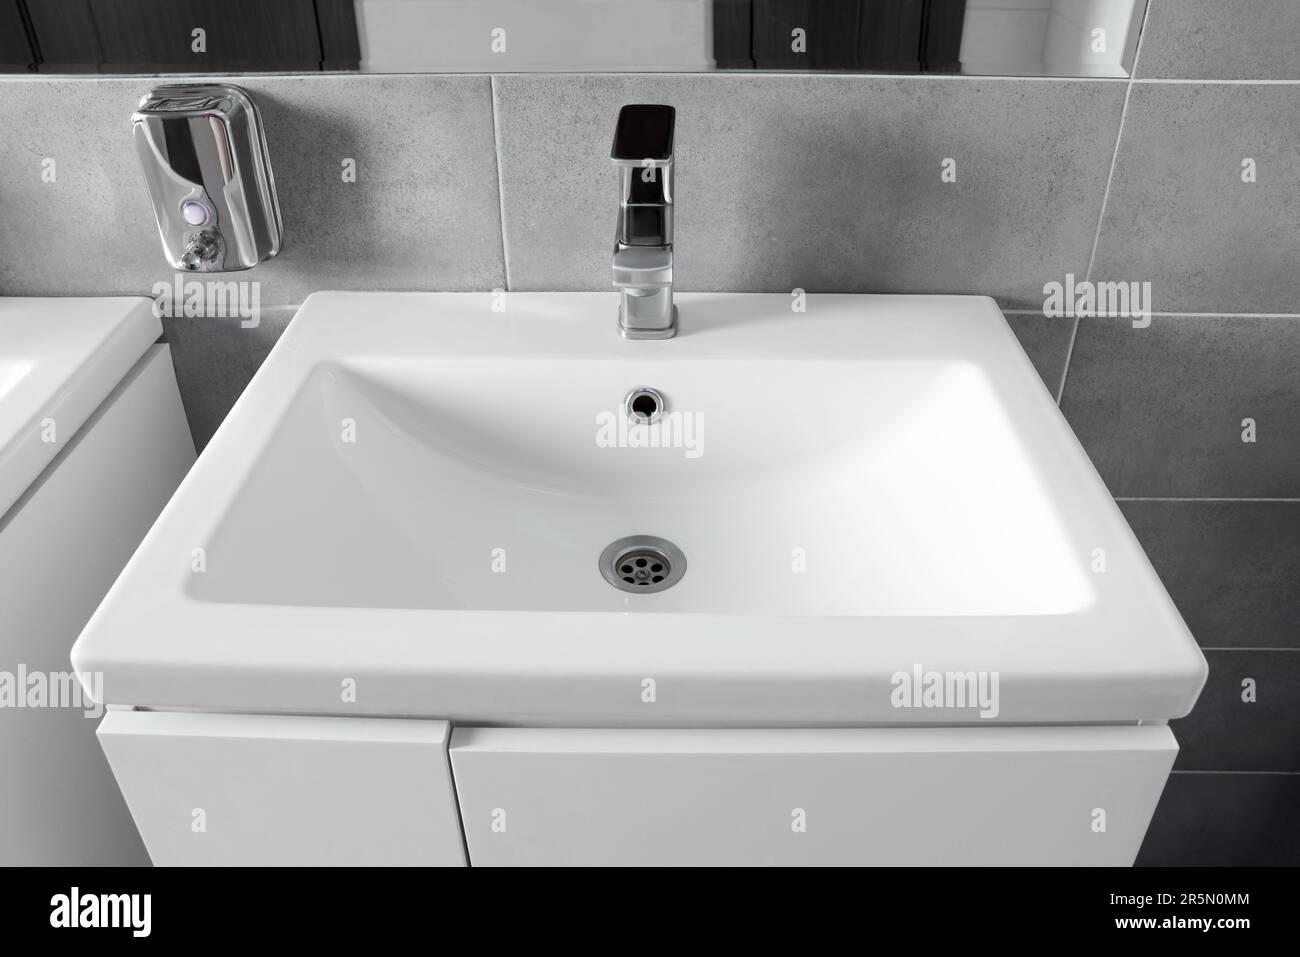 Magnifique lavabo propre près du miroir dans les toilettes publiques Photo  Stock - Alamy